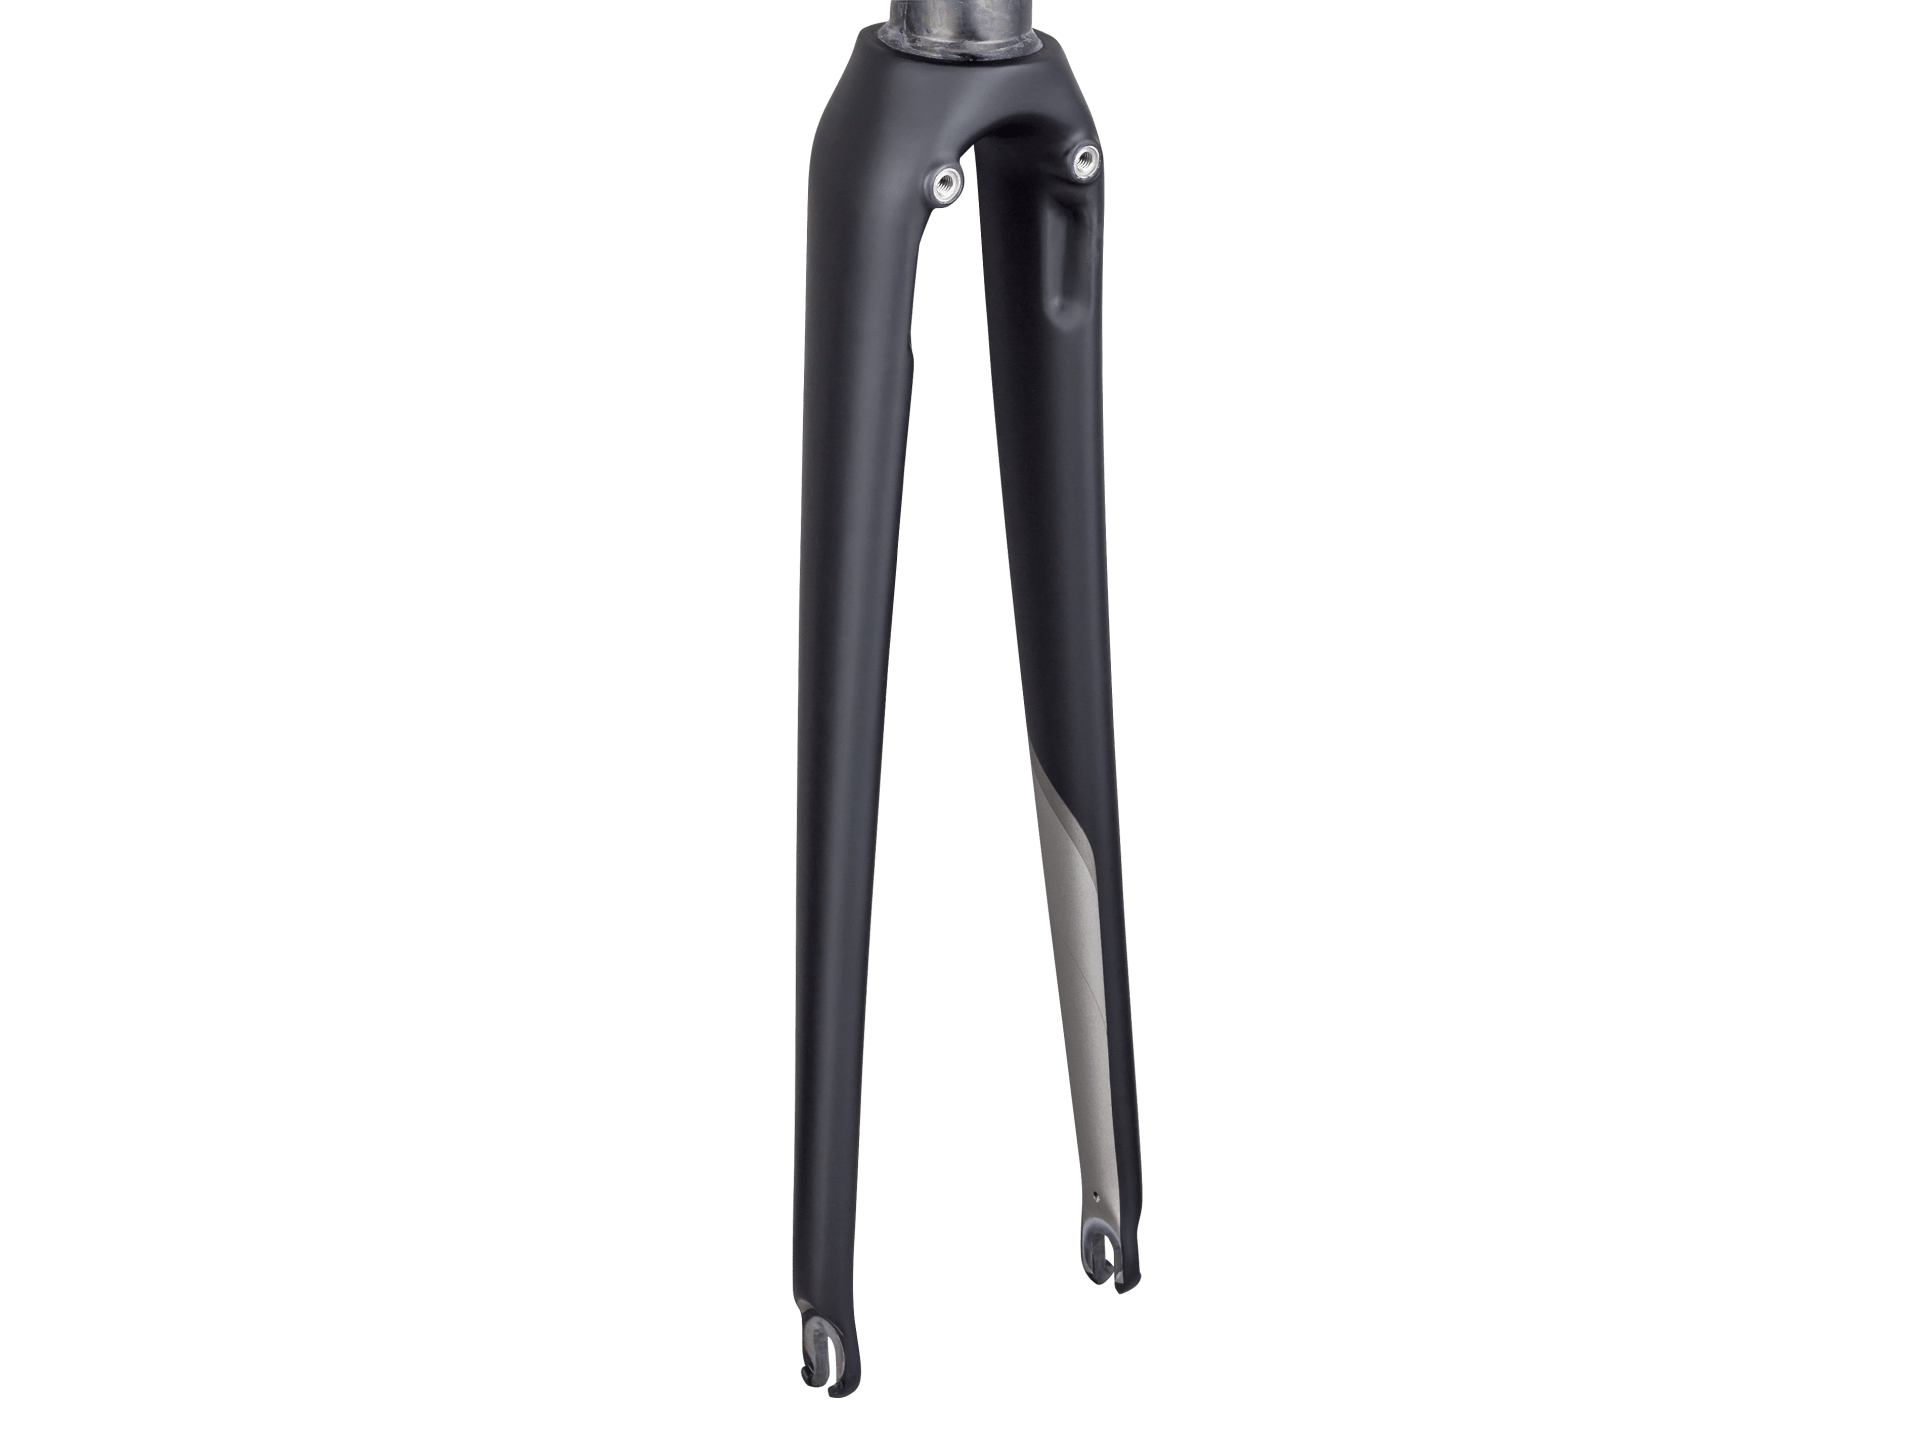 Trek 2018 Émonda SLR 8 700c Fork